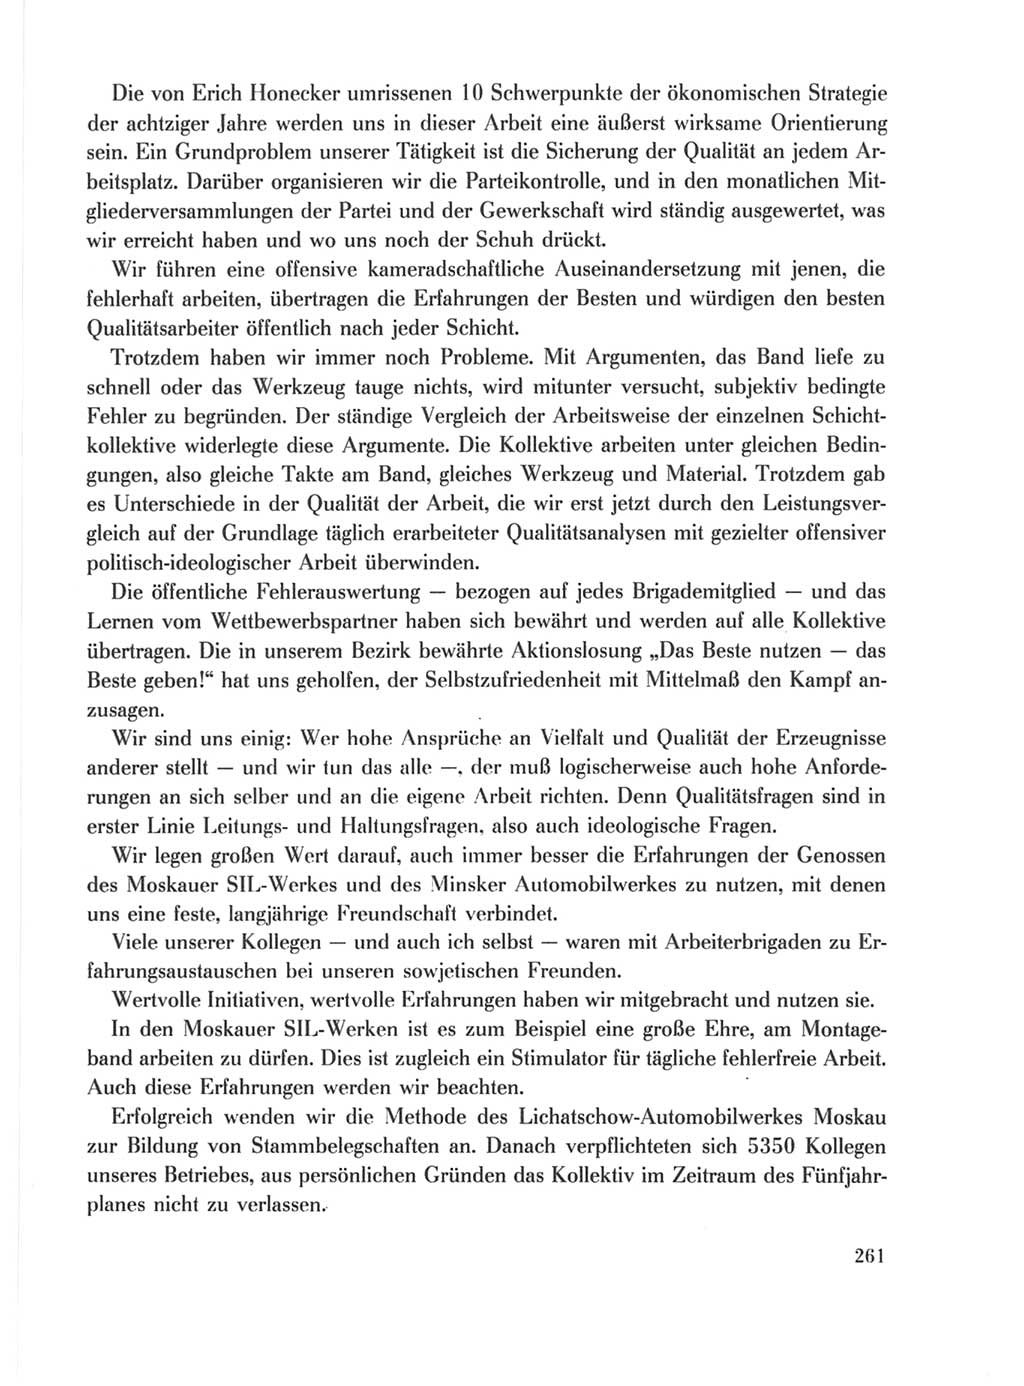 Protokoll der Verhandlungen des Ⅹ. Parteitages der Sozialistischen Einheitspartei Deutschlands (SED) [Deutsche Demokratische Republik (DDR)] 1981, Band 1, Seite 261 (Prot. Verh. Ⅹ. PT SED DDR 1981, Bd. 1, S. 261)